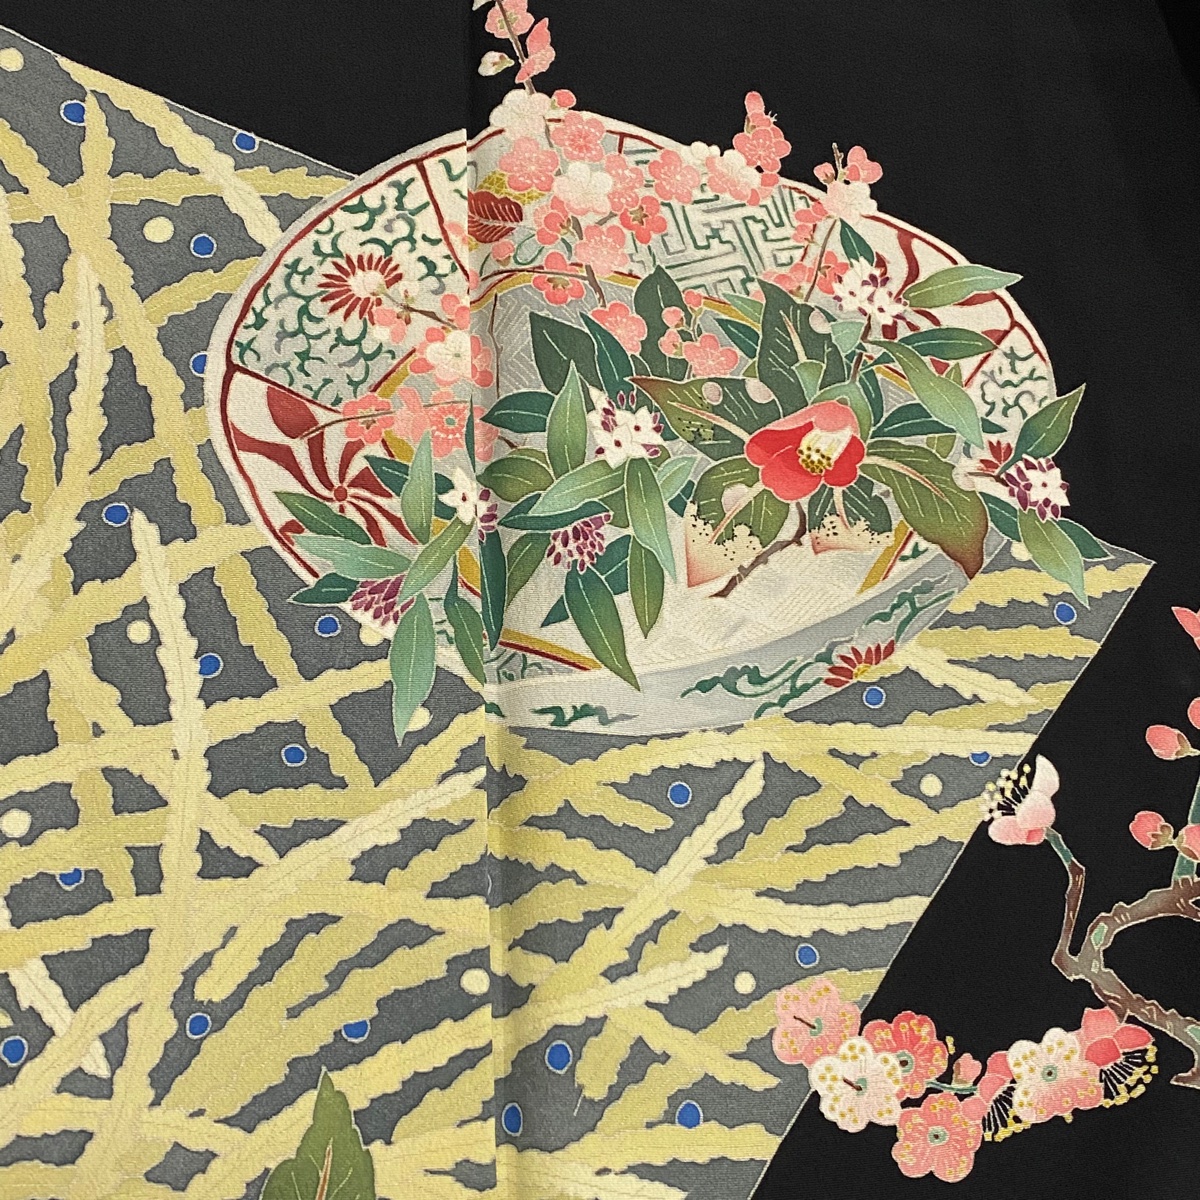  кимоно куротомэсодэ длина 161.5cm длина рукава 64cm M. kakimoto город ..... есть ваза для цветов чёрный натуральный шелк прекрасный наименование товара товар б/у 